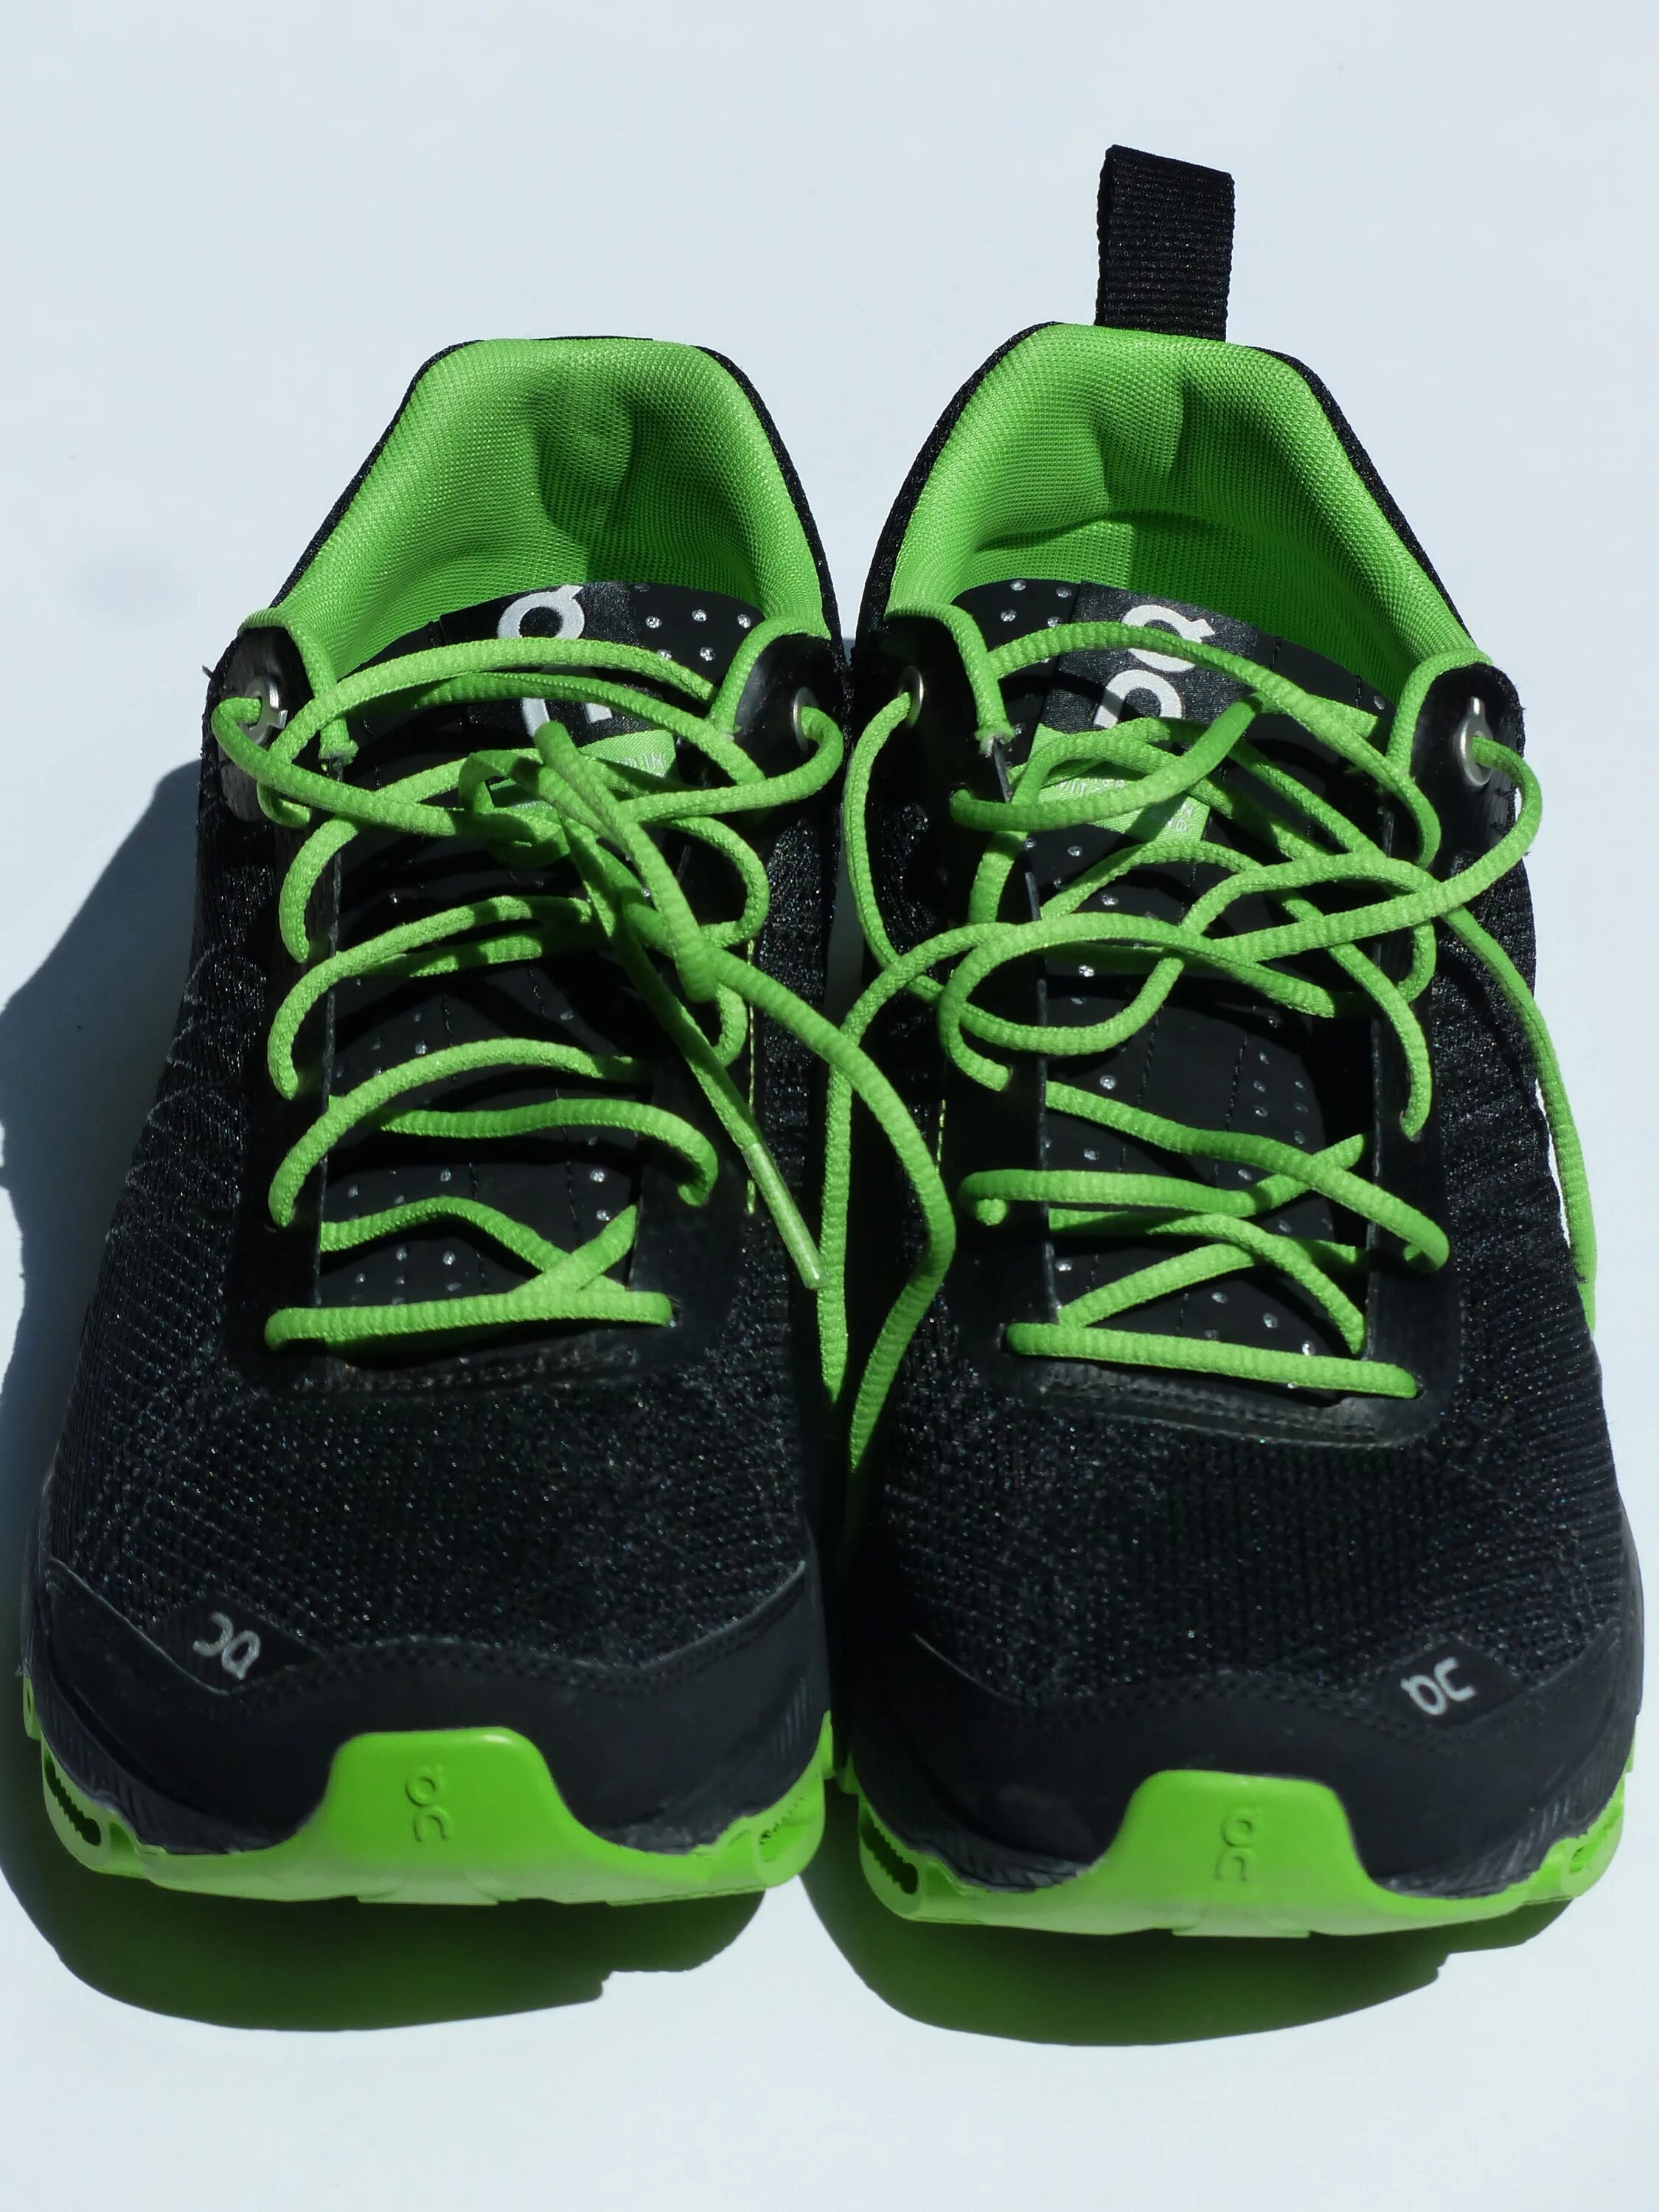 Black Green 2000 кроссовки. Кроссовки найк для бега черные с зеленой подошвой. Кроссовки найк для бега зеленые. Кроссовки найк для бега черные с зеленой подошвой женские. Кроссовки цвет шнурков